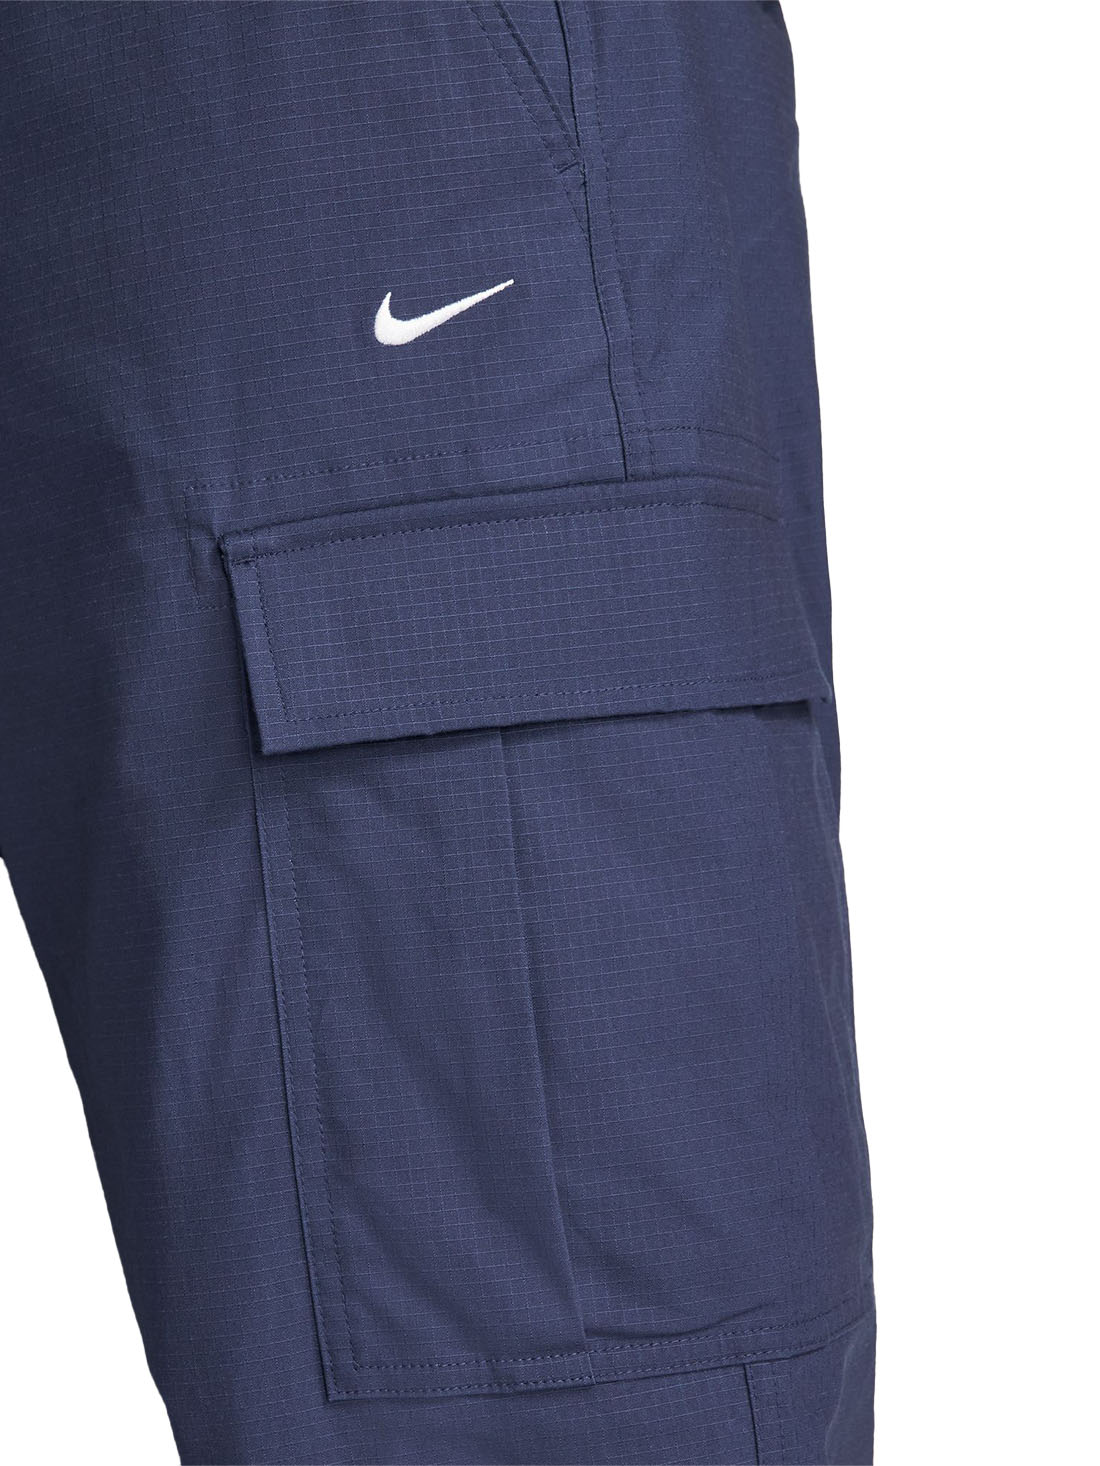 Nike SB Kearny Cargo Pant - Midnight Navy - WeAreCivil.com